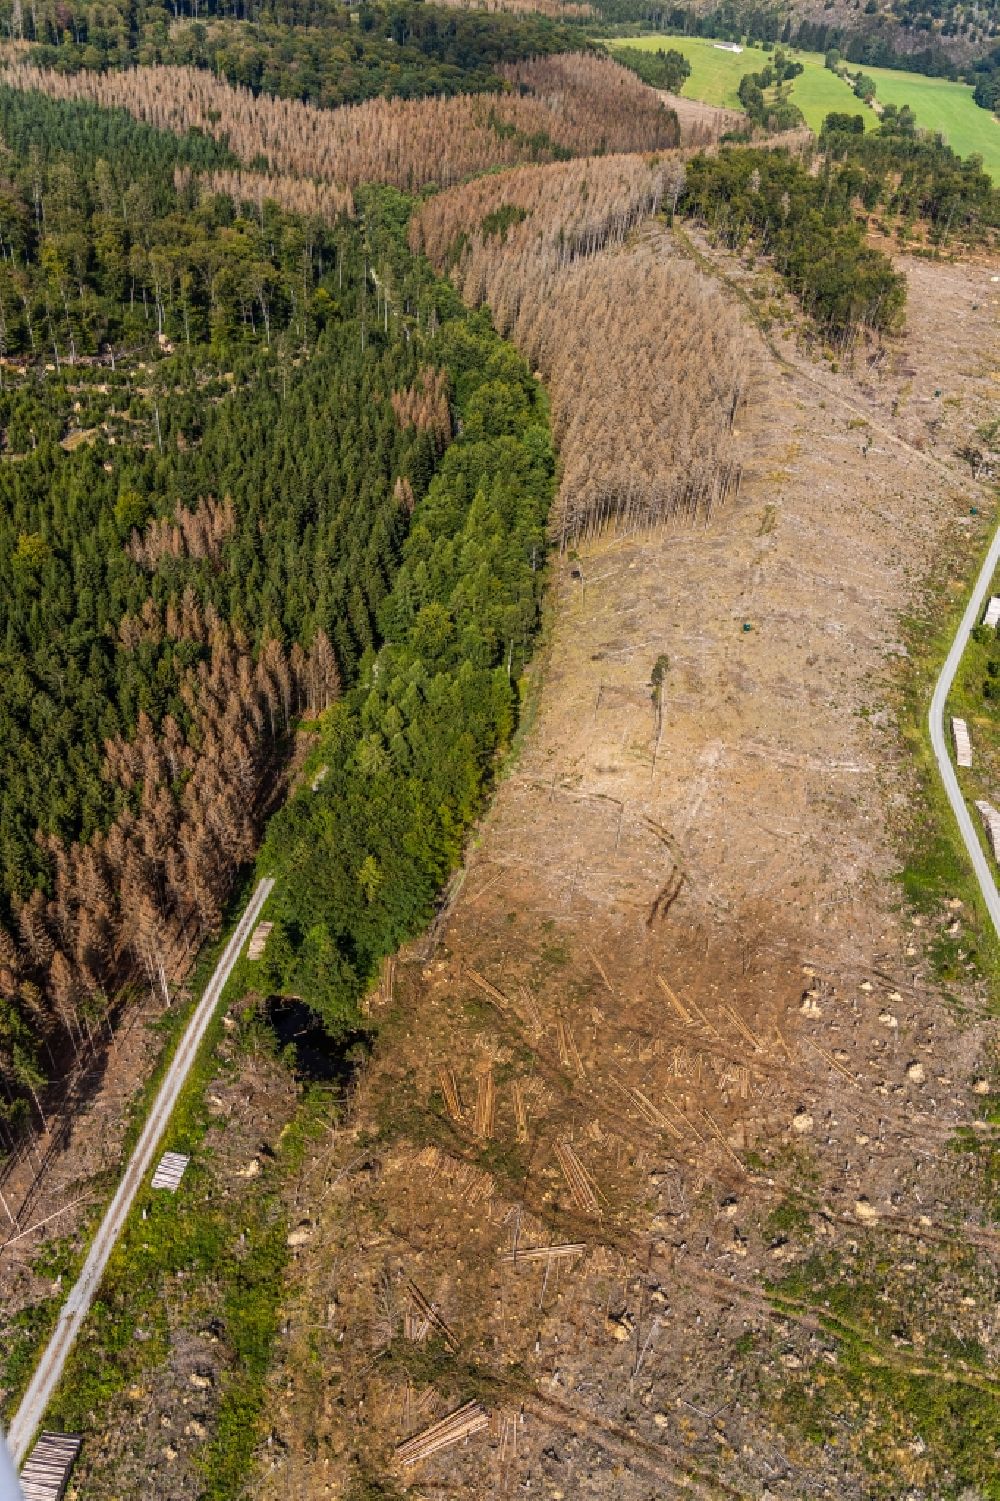 Hemmecker Bruch aus der Vogelperspektive: Abgestorbene Baumspitzen in einem Waldgebiet in Hemmecker Bruch im Bundesland Nordrhein-Westfalen, Deutschland